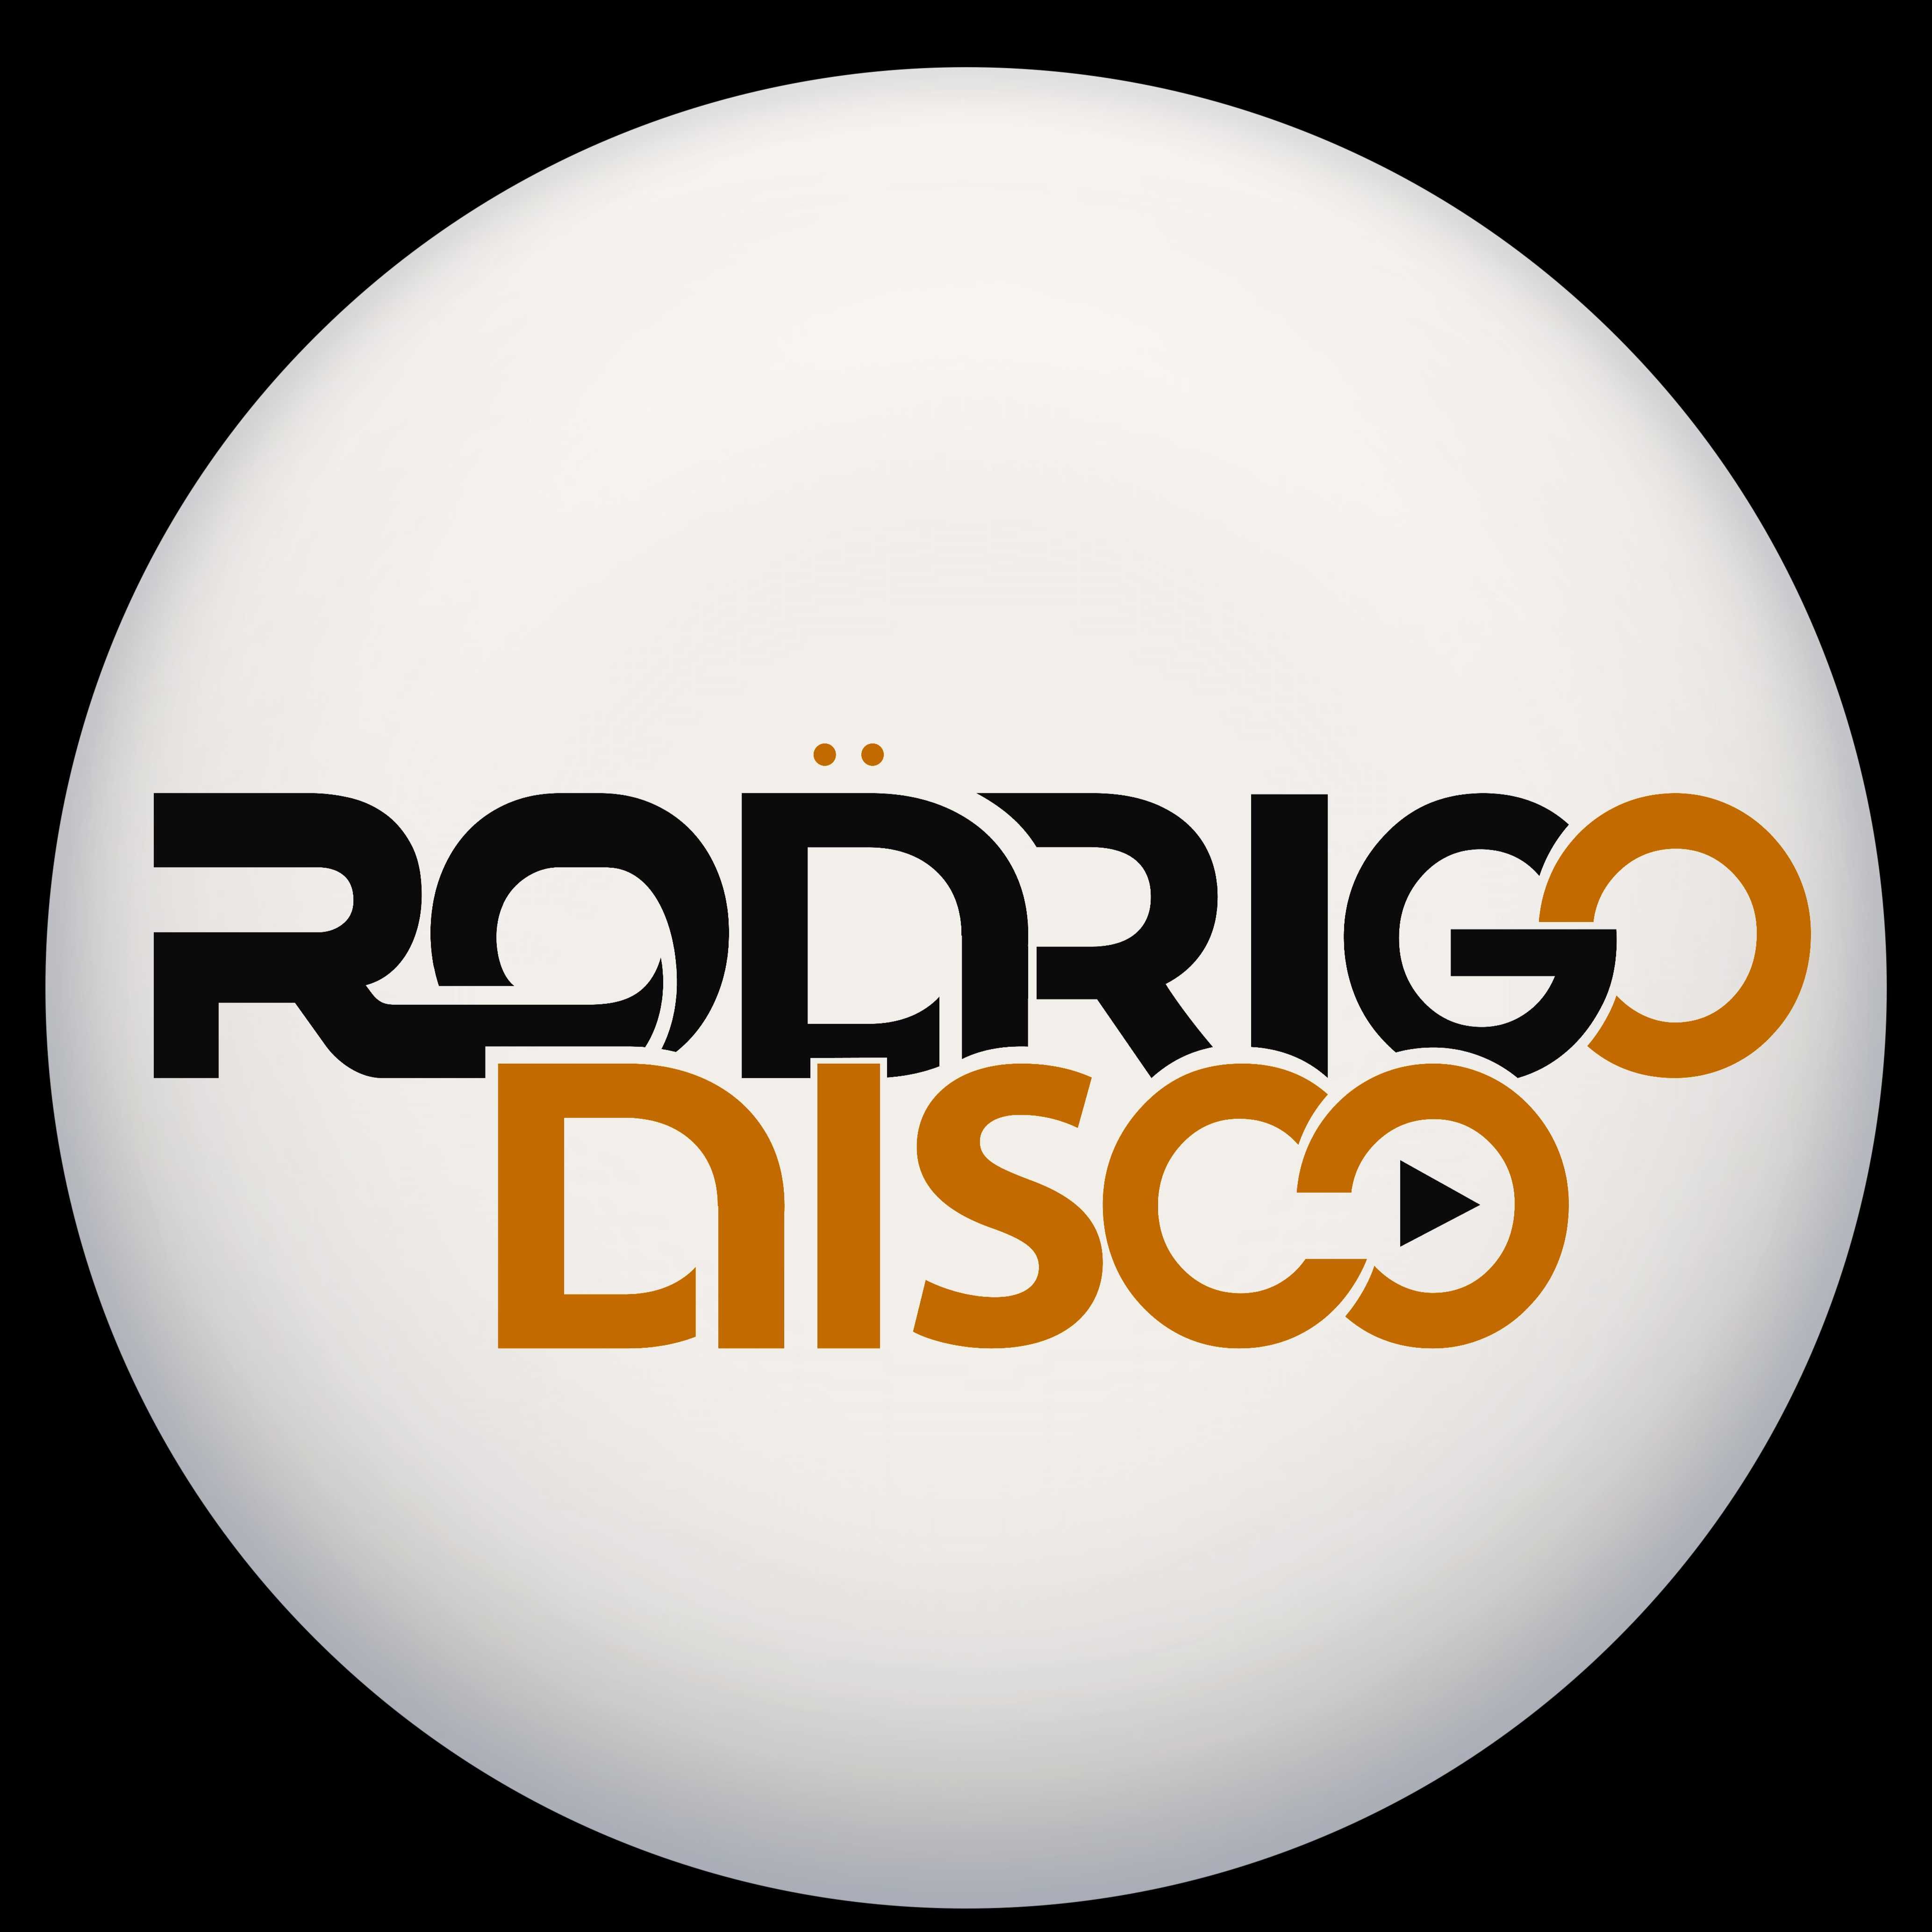 Rodrigo Disco - Dj para eventos, som e luz.